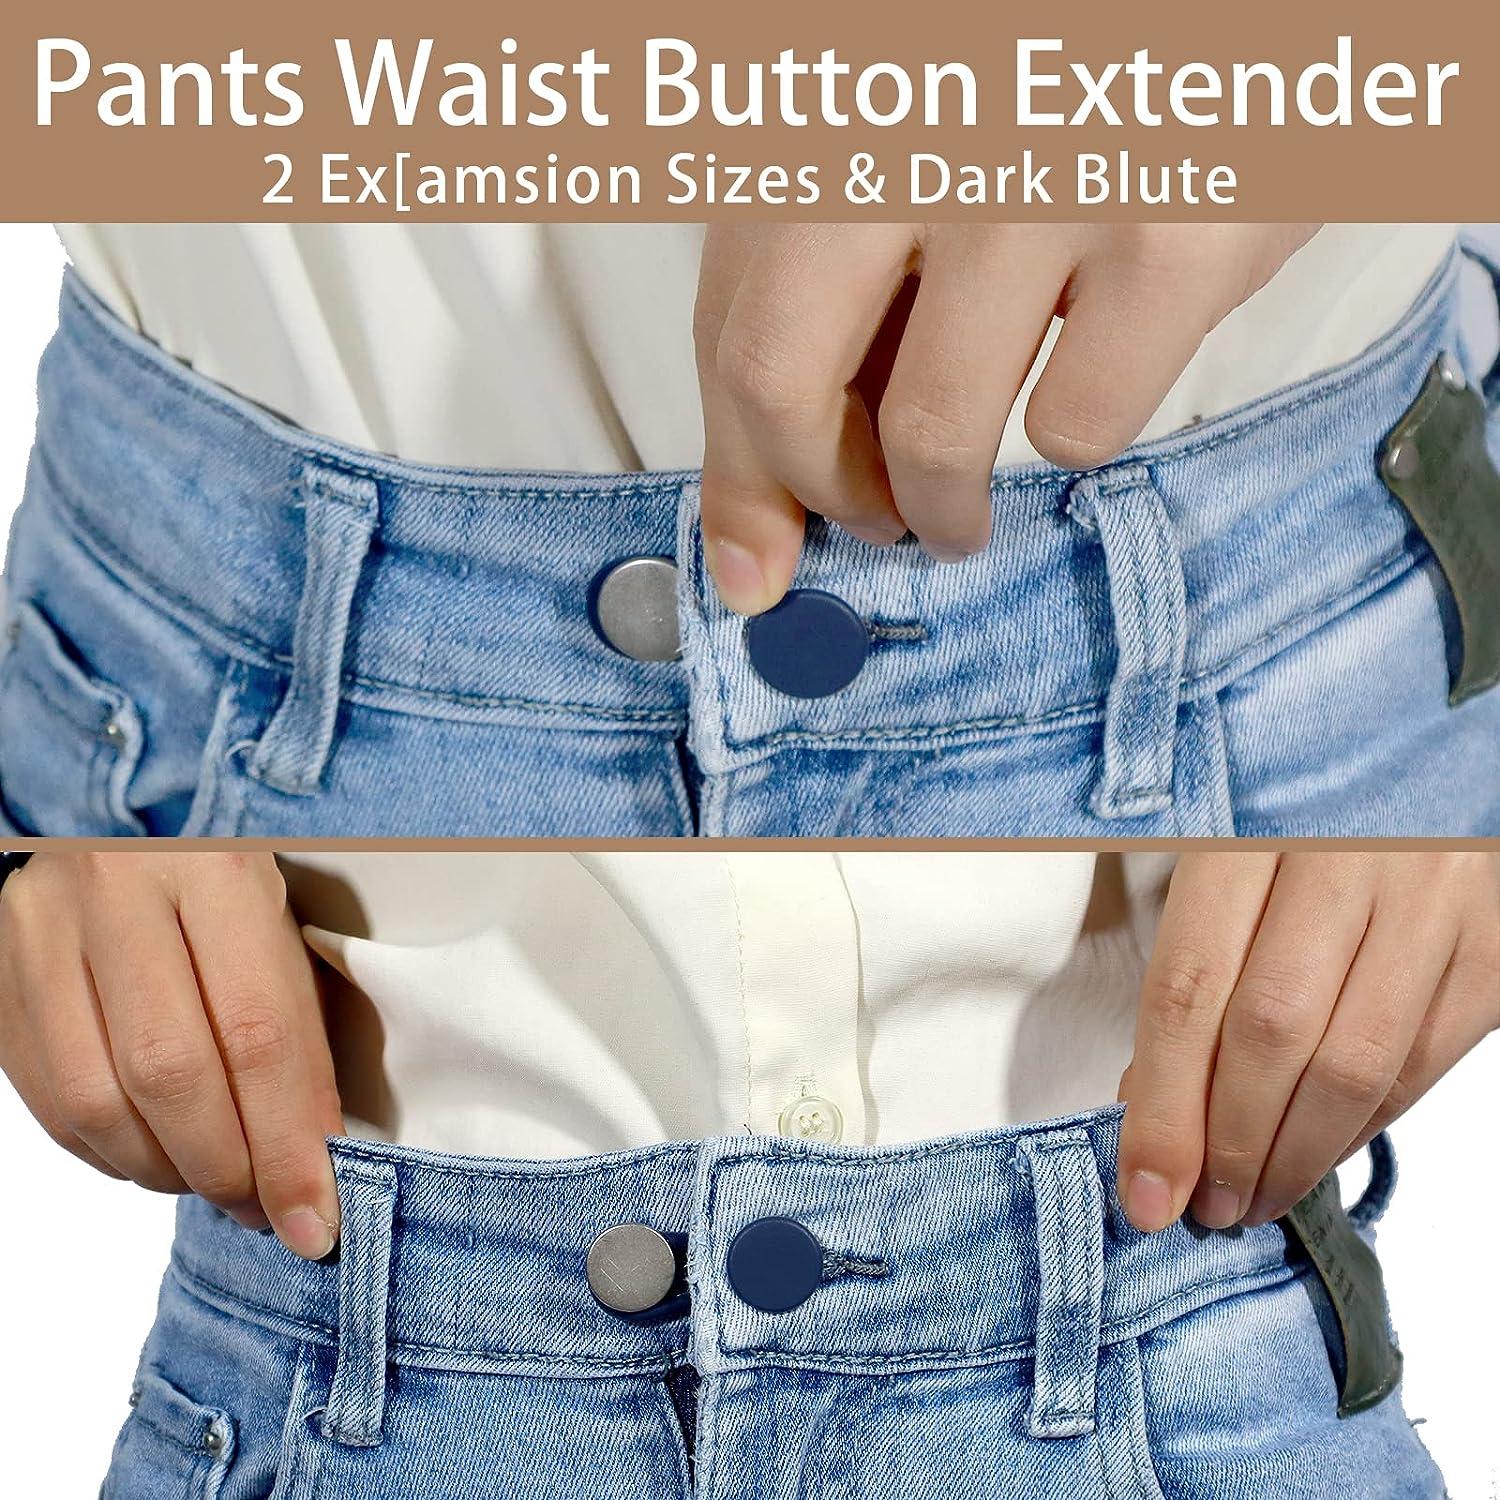 12PCS Button Extenders for Jeans, Jean Button Extender, Button Extender for  Pants, Waist Extenders for Pants for Women for Men, Pants Waist Extension  1/1.4 Inches, Black, Blue, Khaki